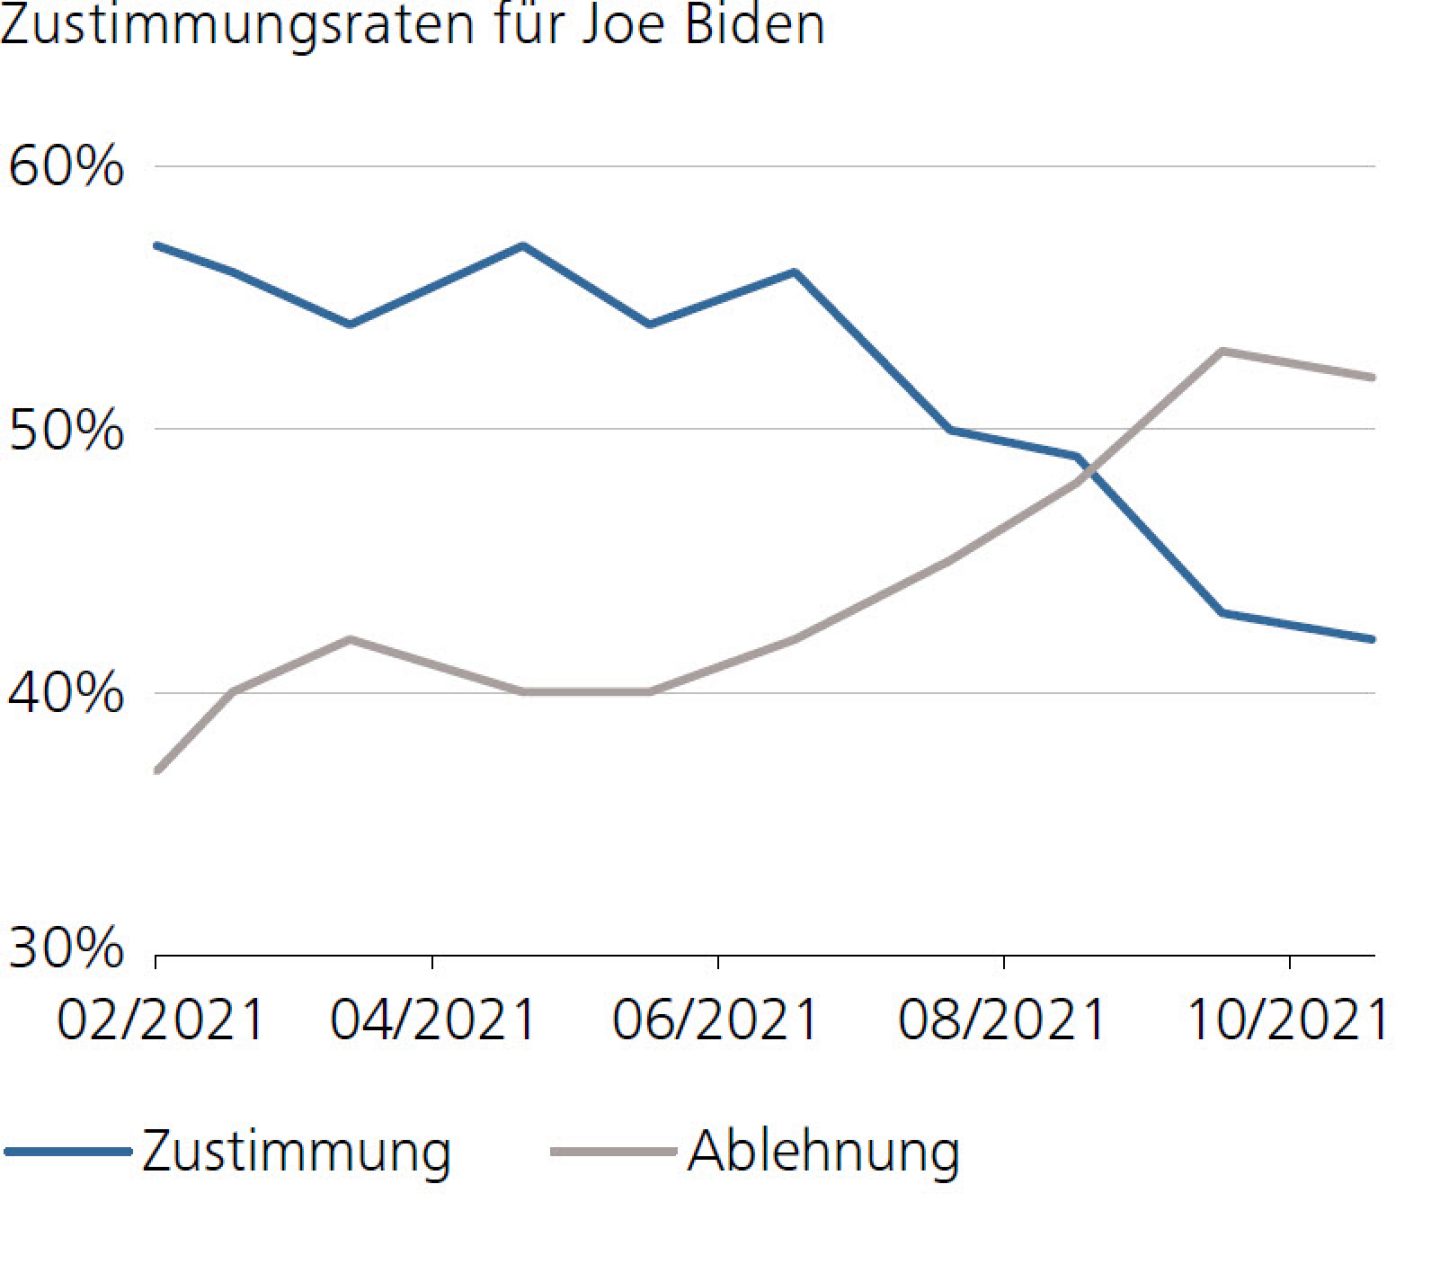 Zustimmungsraten für Joe Biden